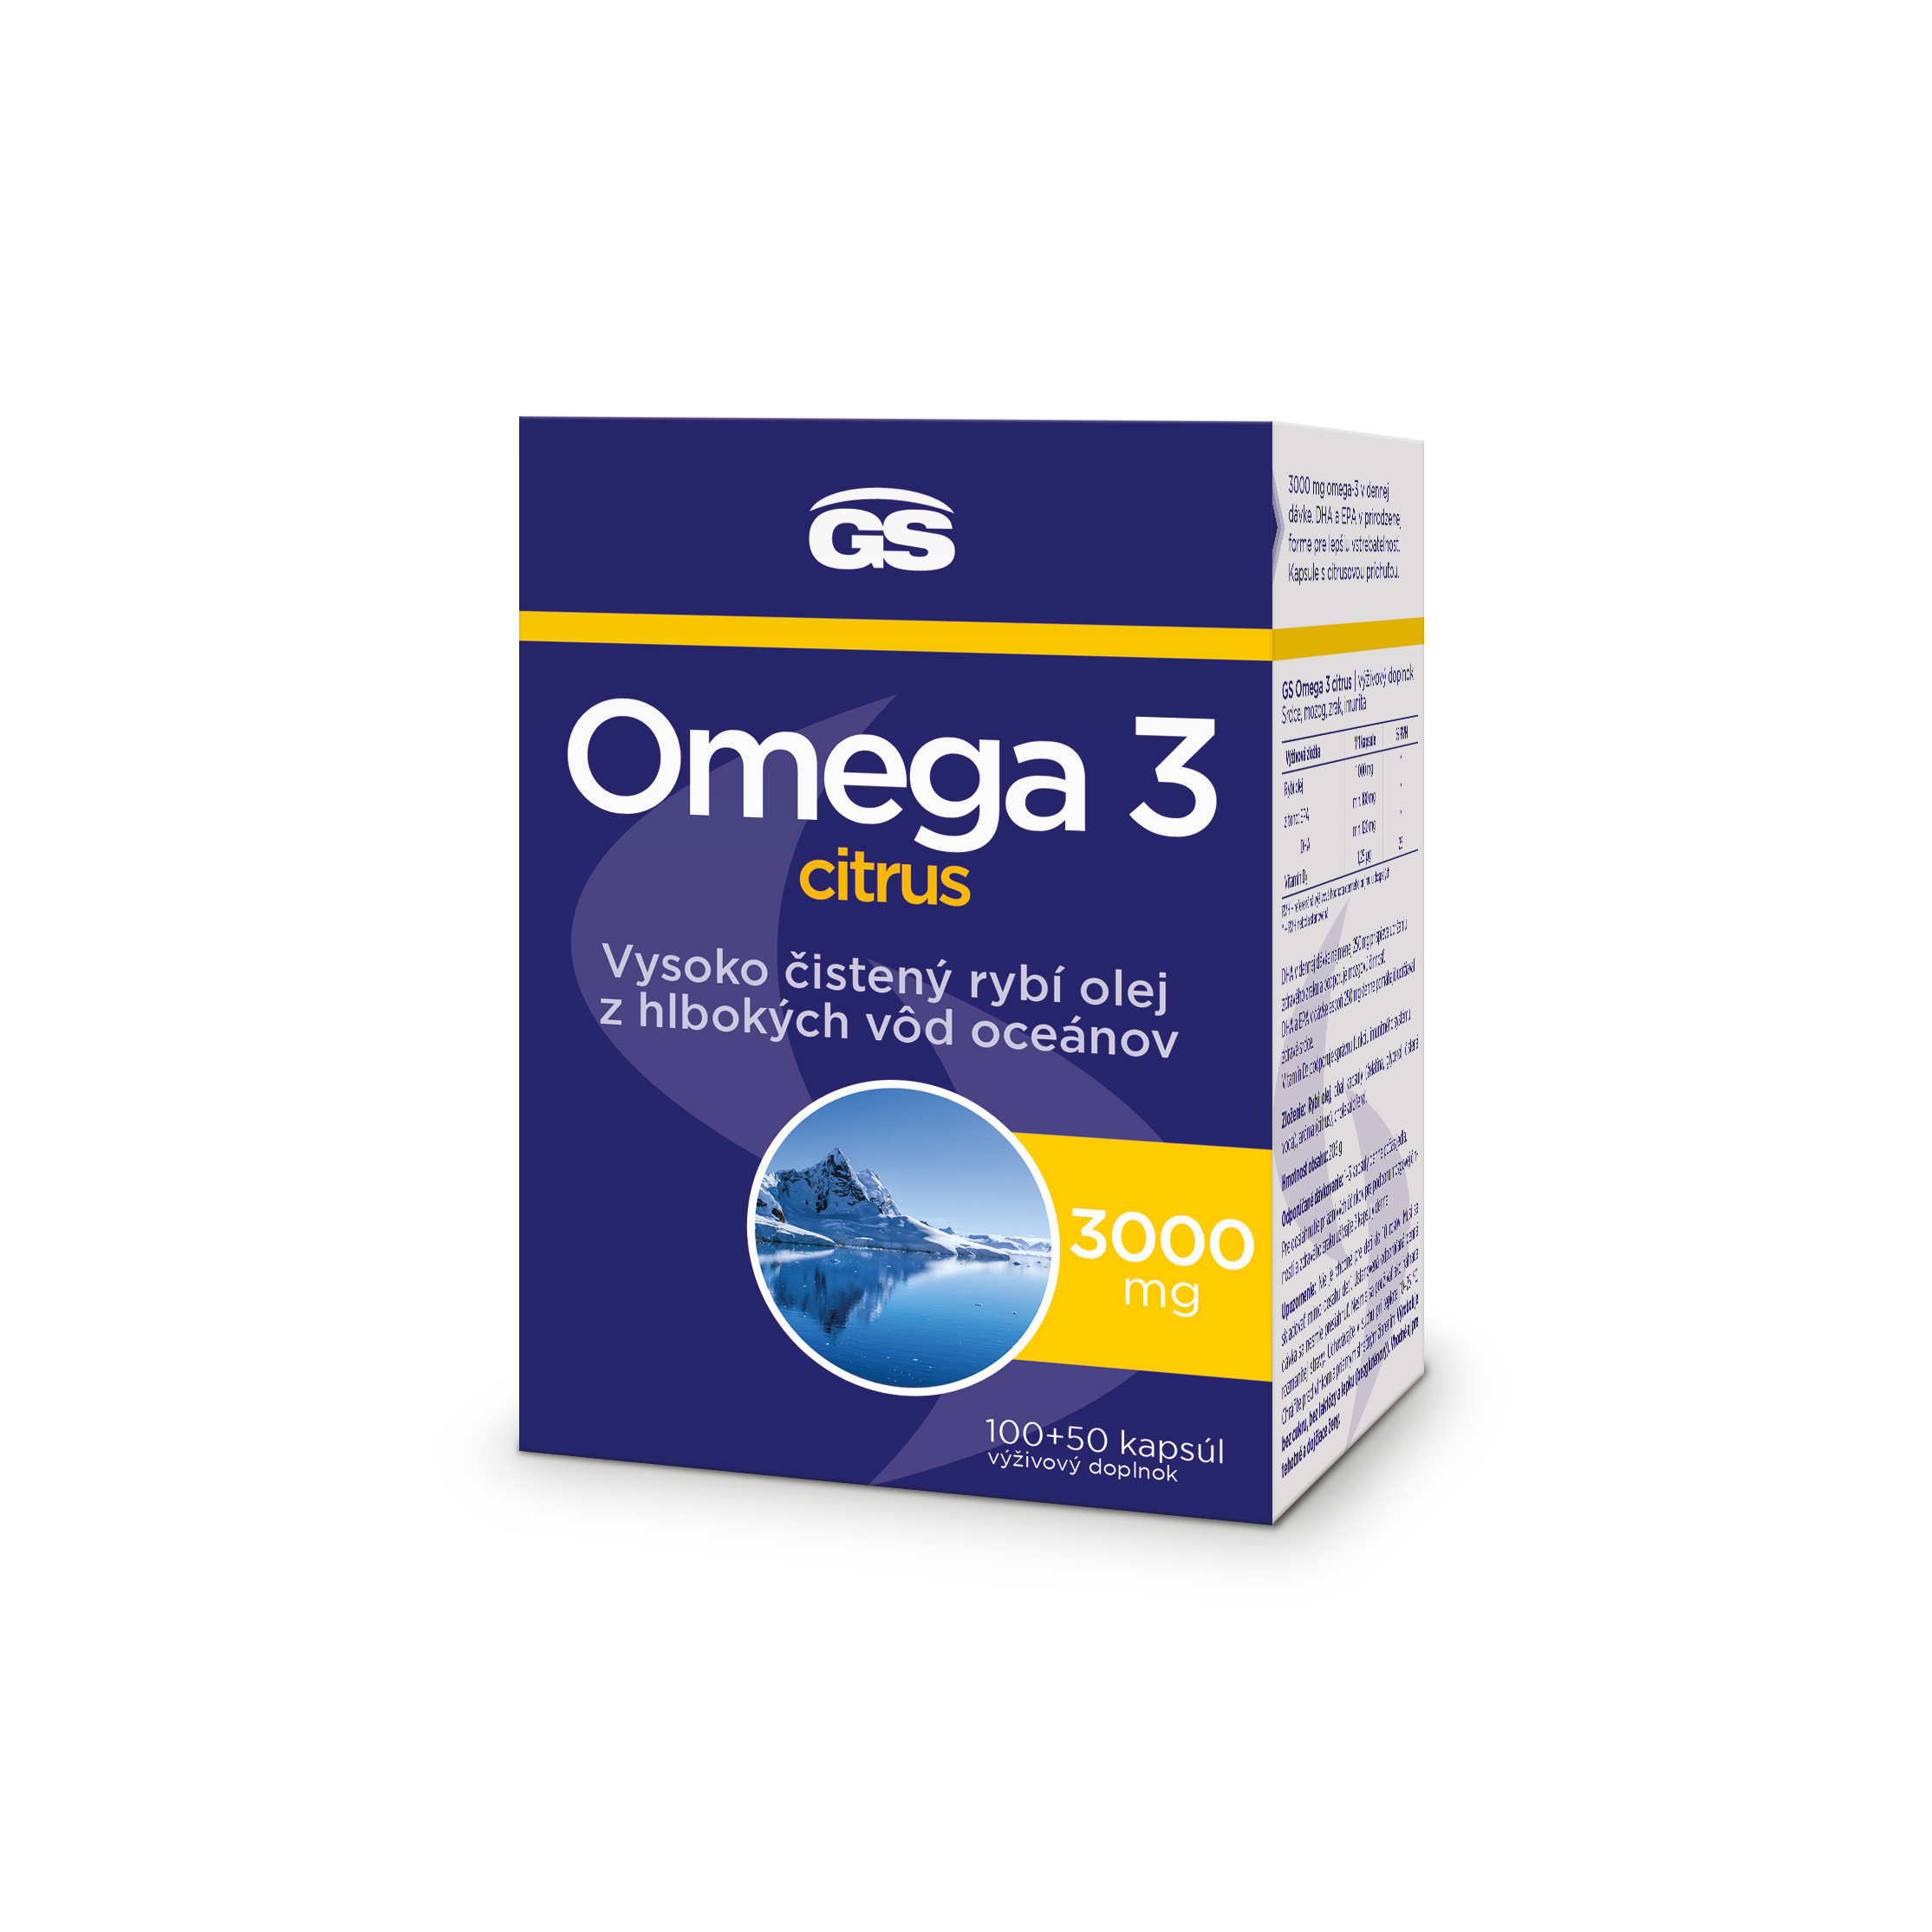 GS Omega 3 citrus, 10050 kapsúl